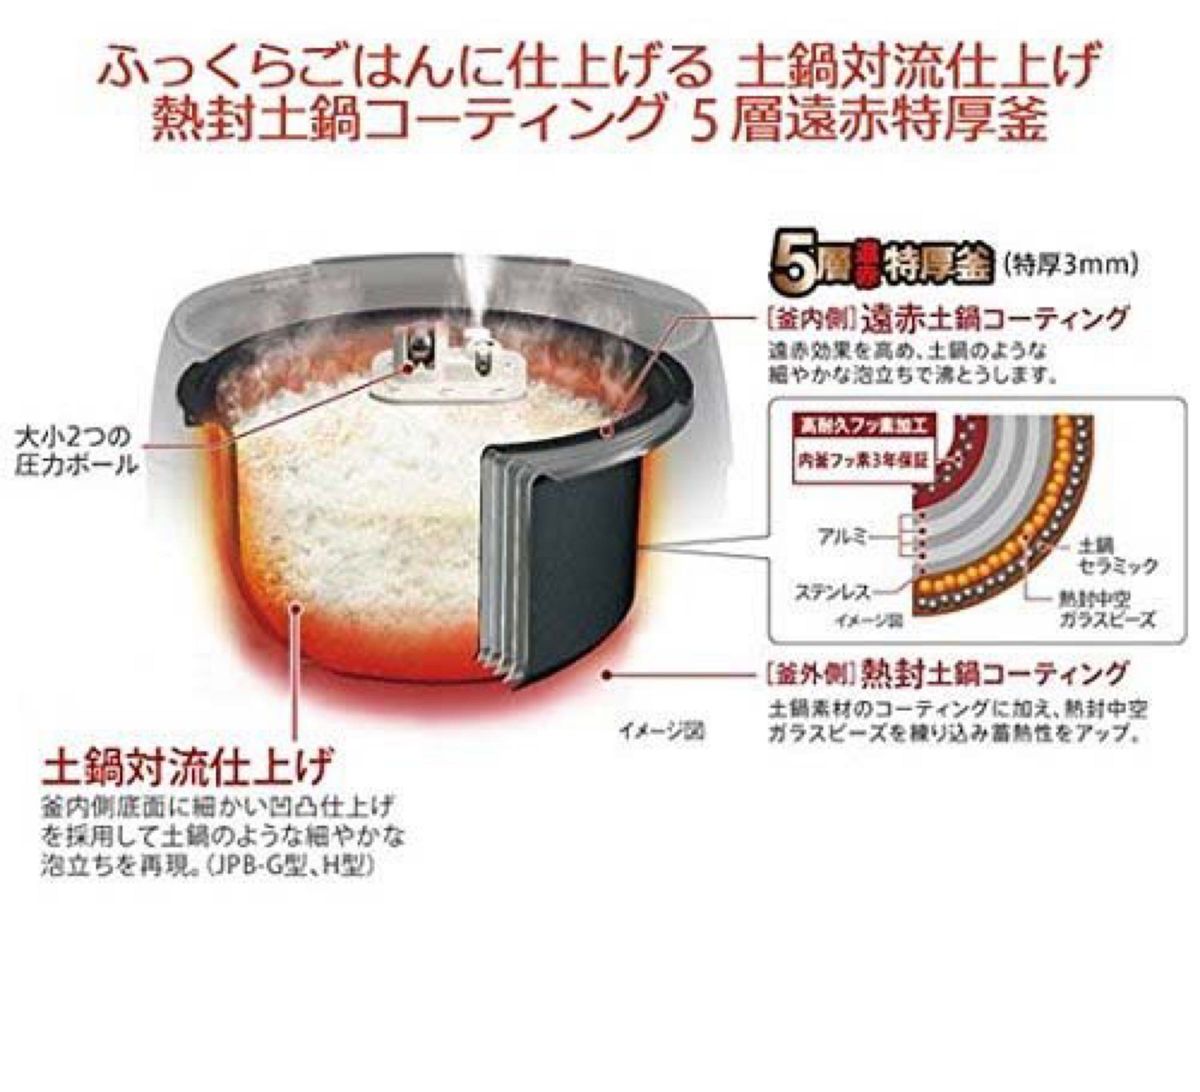 タイガー圧力炊飯ジャーJPB-H101日本製15年製 TIGER5.5合